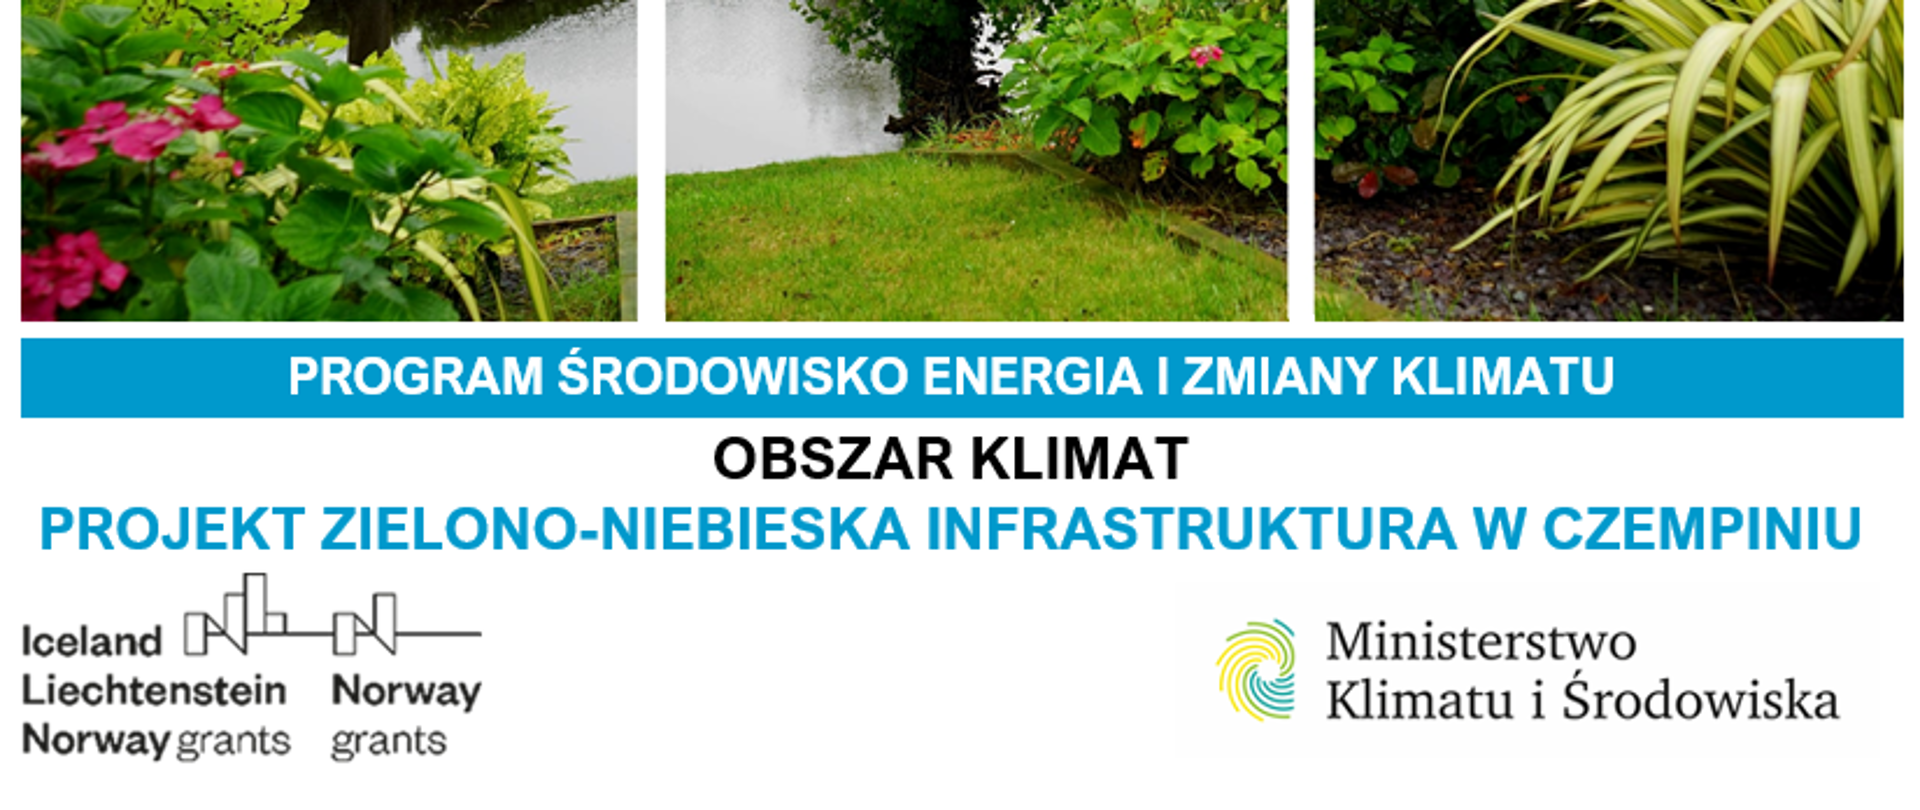 Projekt zielono-niebieska infrastruktura w Czempiniu MF EOG